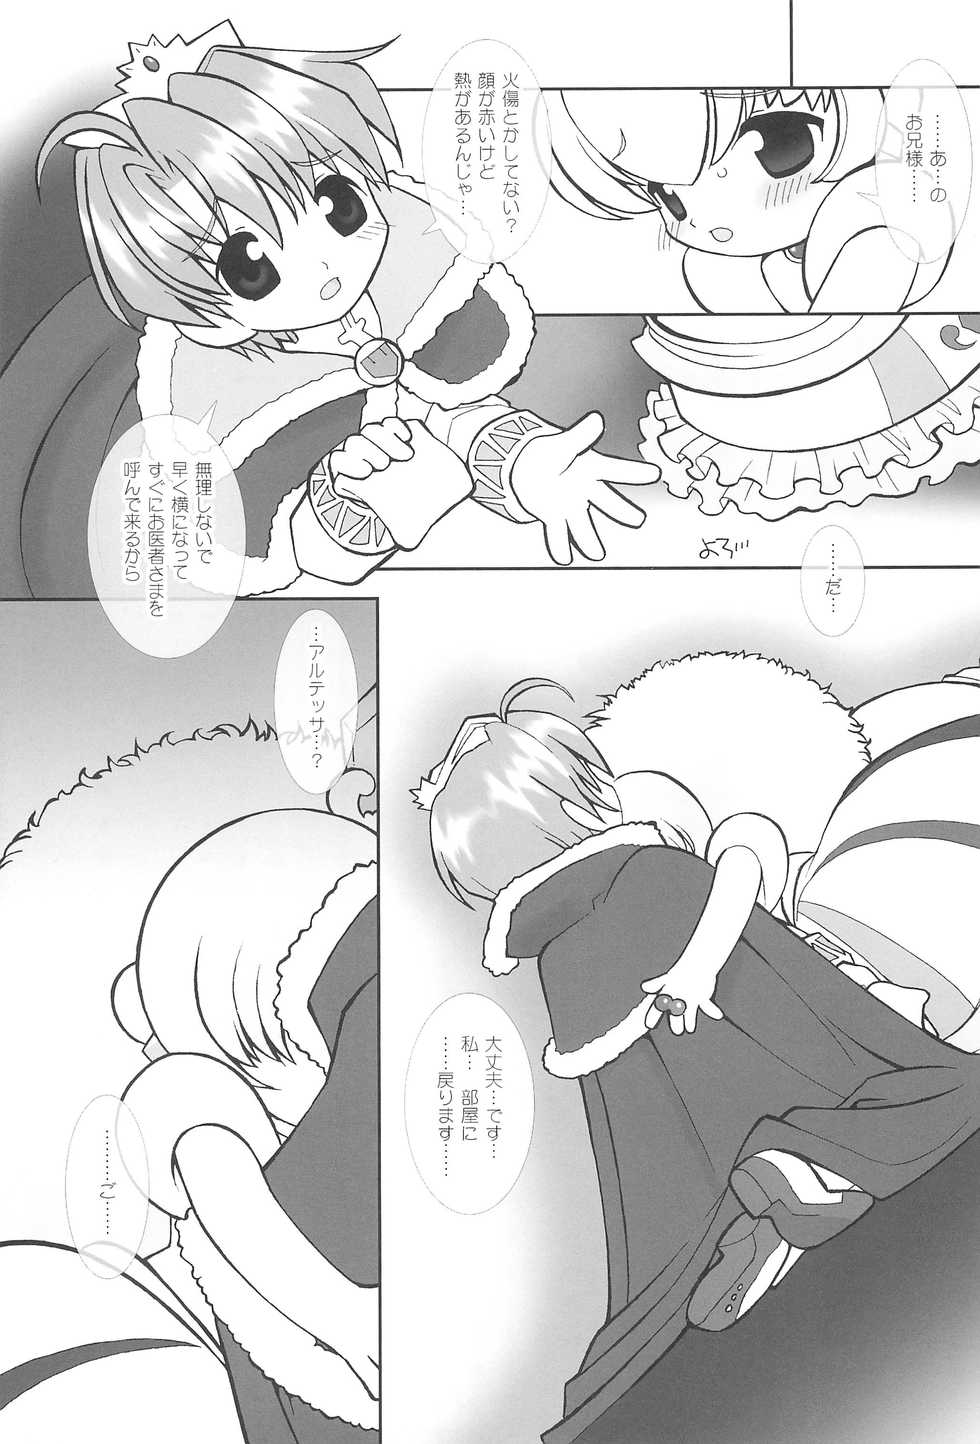 (Puniket 14) [Sadakichidou (Yamamoto Takeo)] Tsuki no Ura de Aimashou #7 - Let's go to the Darkside of the Moon #7 (Fushigiboshi no Futagohime) - Page 11